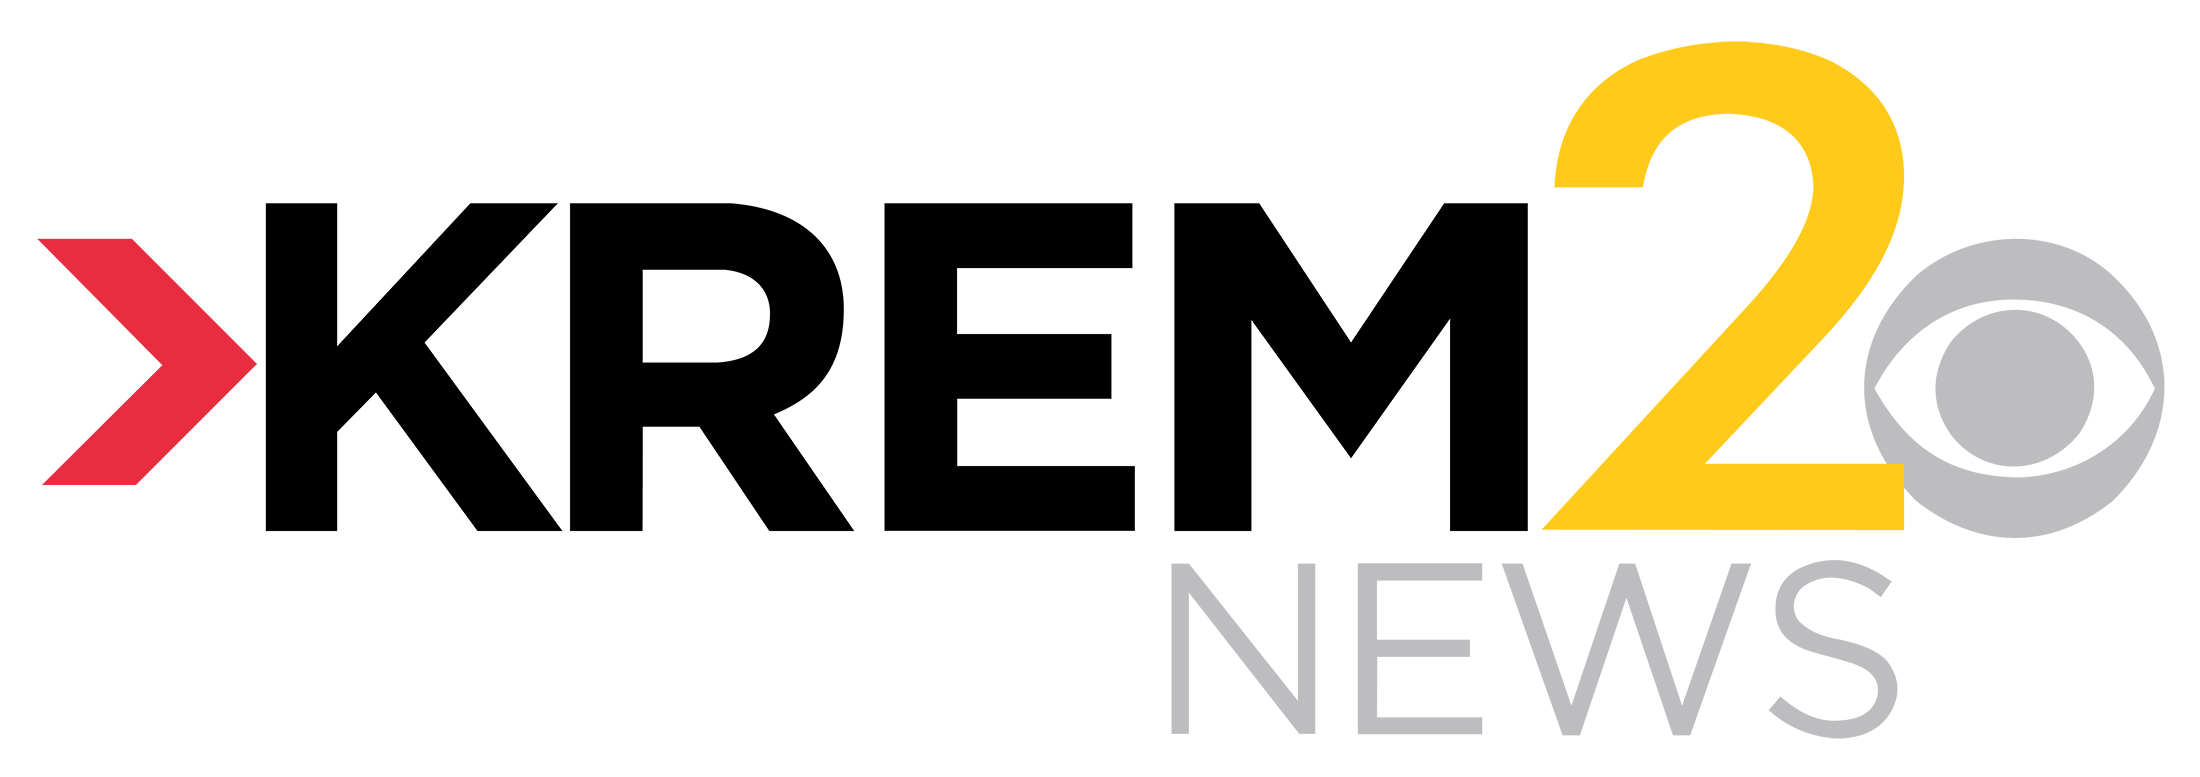 KREM 2 News logo